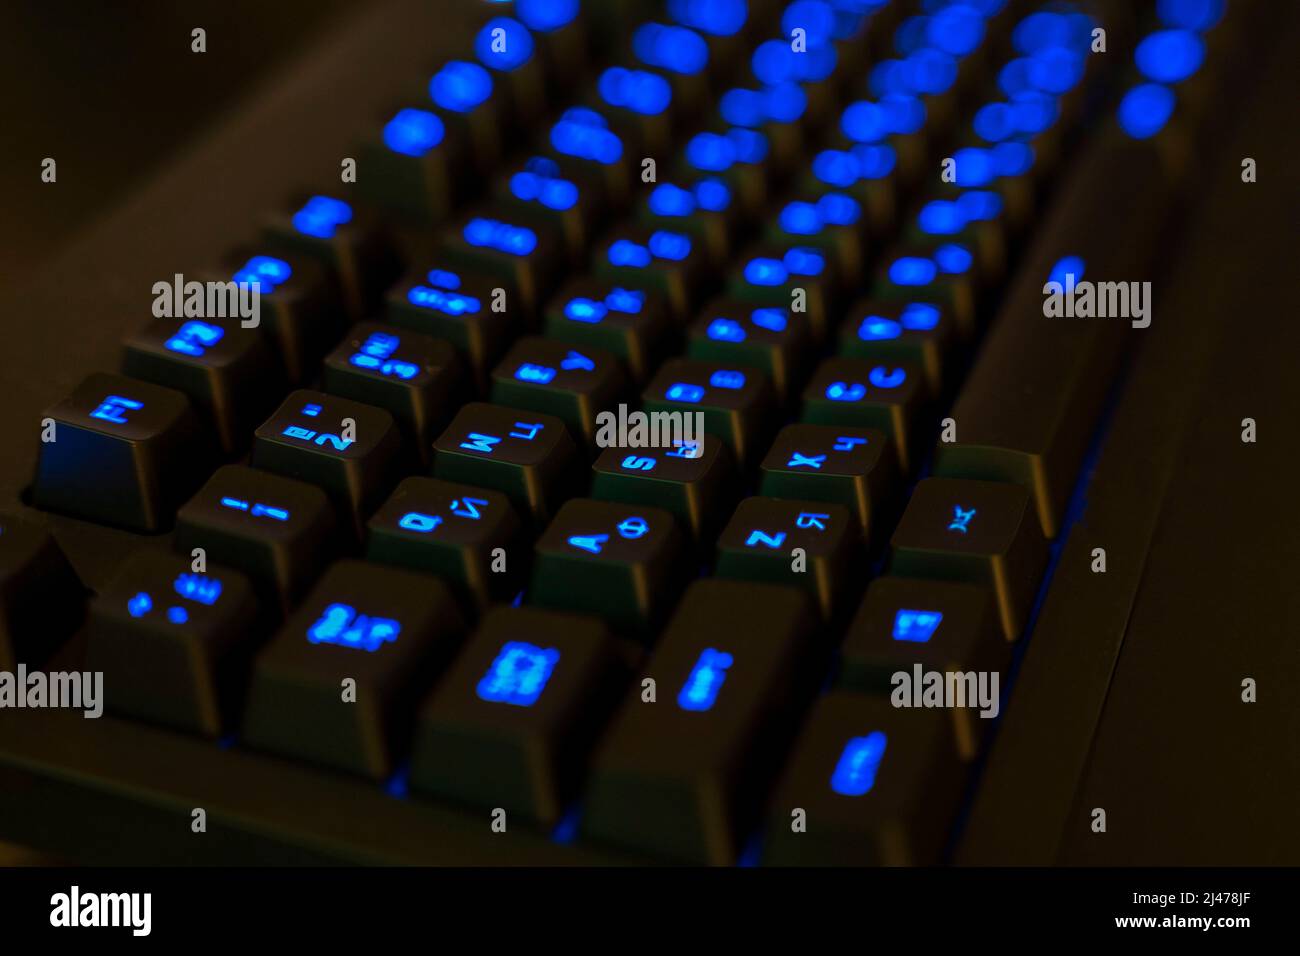 Gaming-Tastatur mit beleuchteten Tasten. Schwarze Tasten mit blau leuchtenden Buchstaben Stockfoto